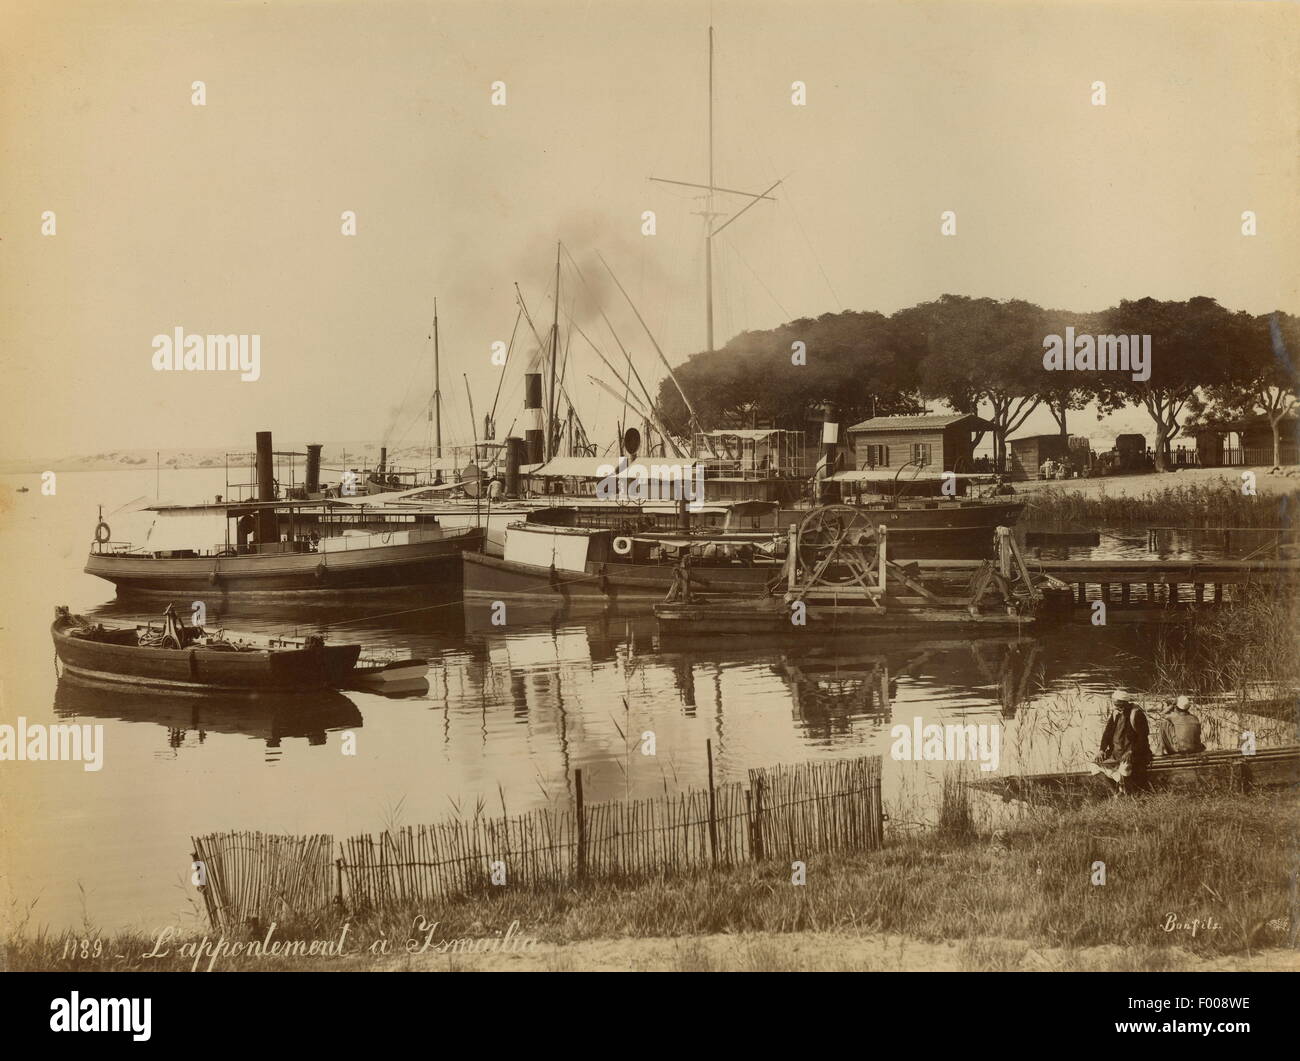 Ismailia, Ägypten - eine Kanal-Szene in der Multi-Kulti-Suez-Kanal Stadt Ismailia, mit Booten der 1880er-Jahre.  Ismailia wurde als Basislager für den Bau des Suezkanals im Jahre 1863 gegründet.   Foto von Zangaki. Stockfoto